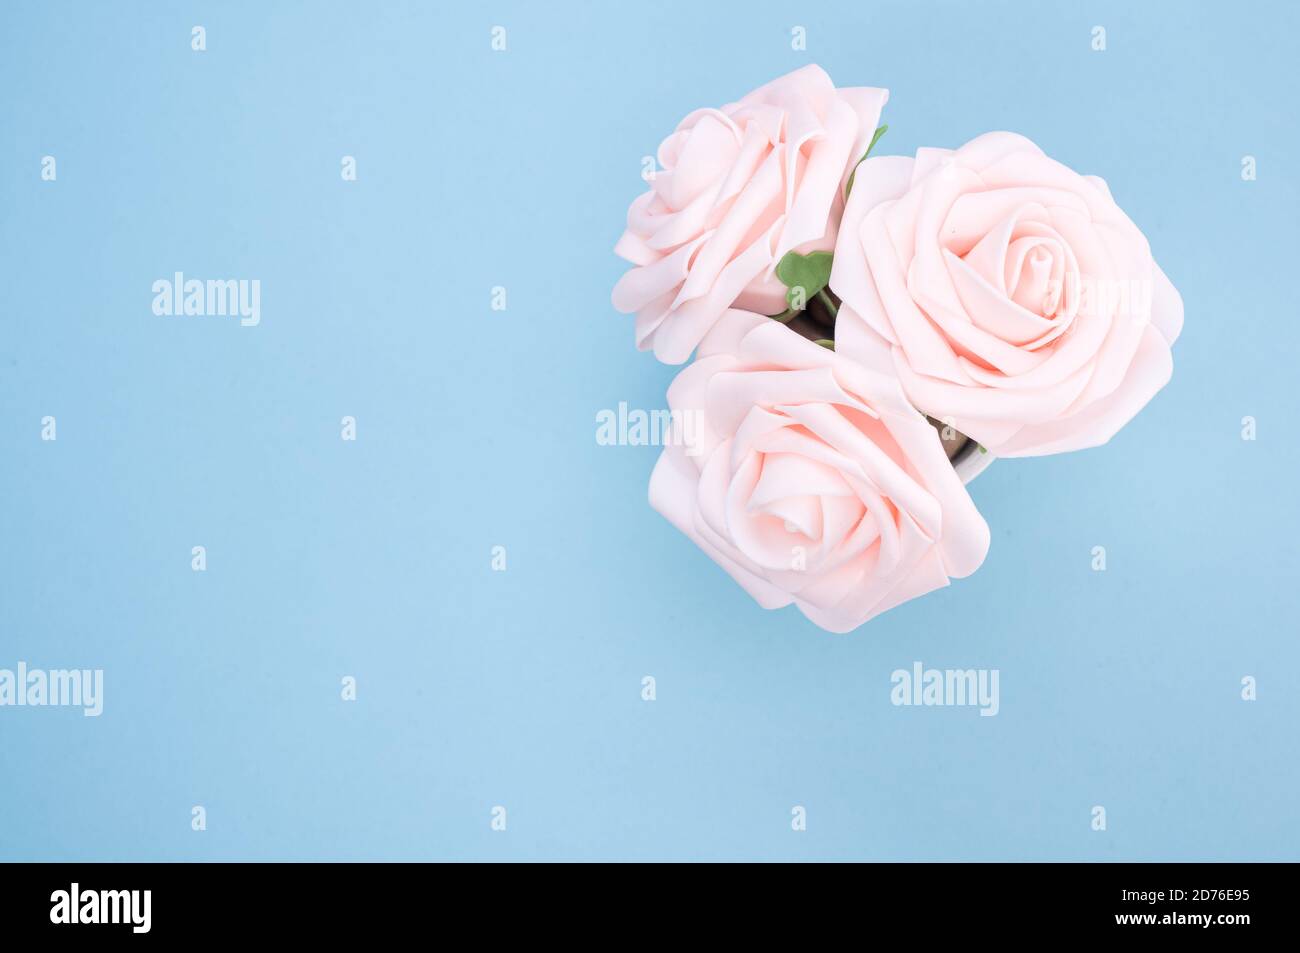 Vista dall'alto di tre rose artificiali rosa chiaro poste in una pentola isolata su sfondo blu Foto Stock